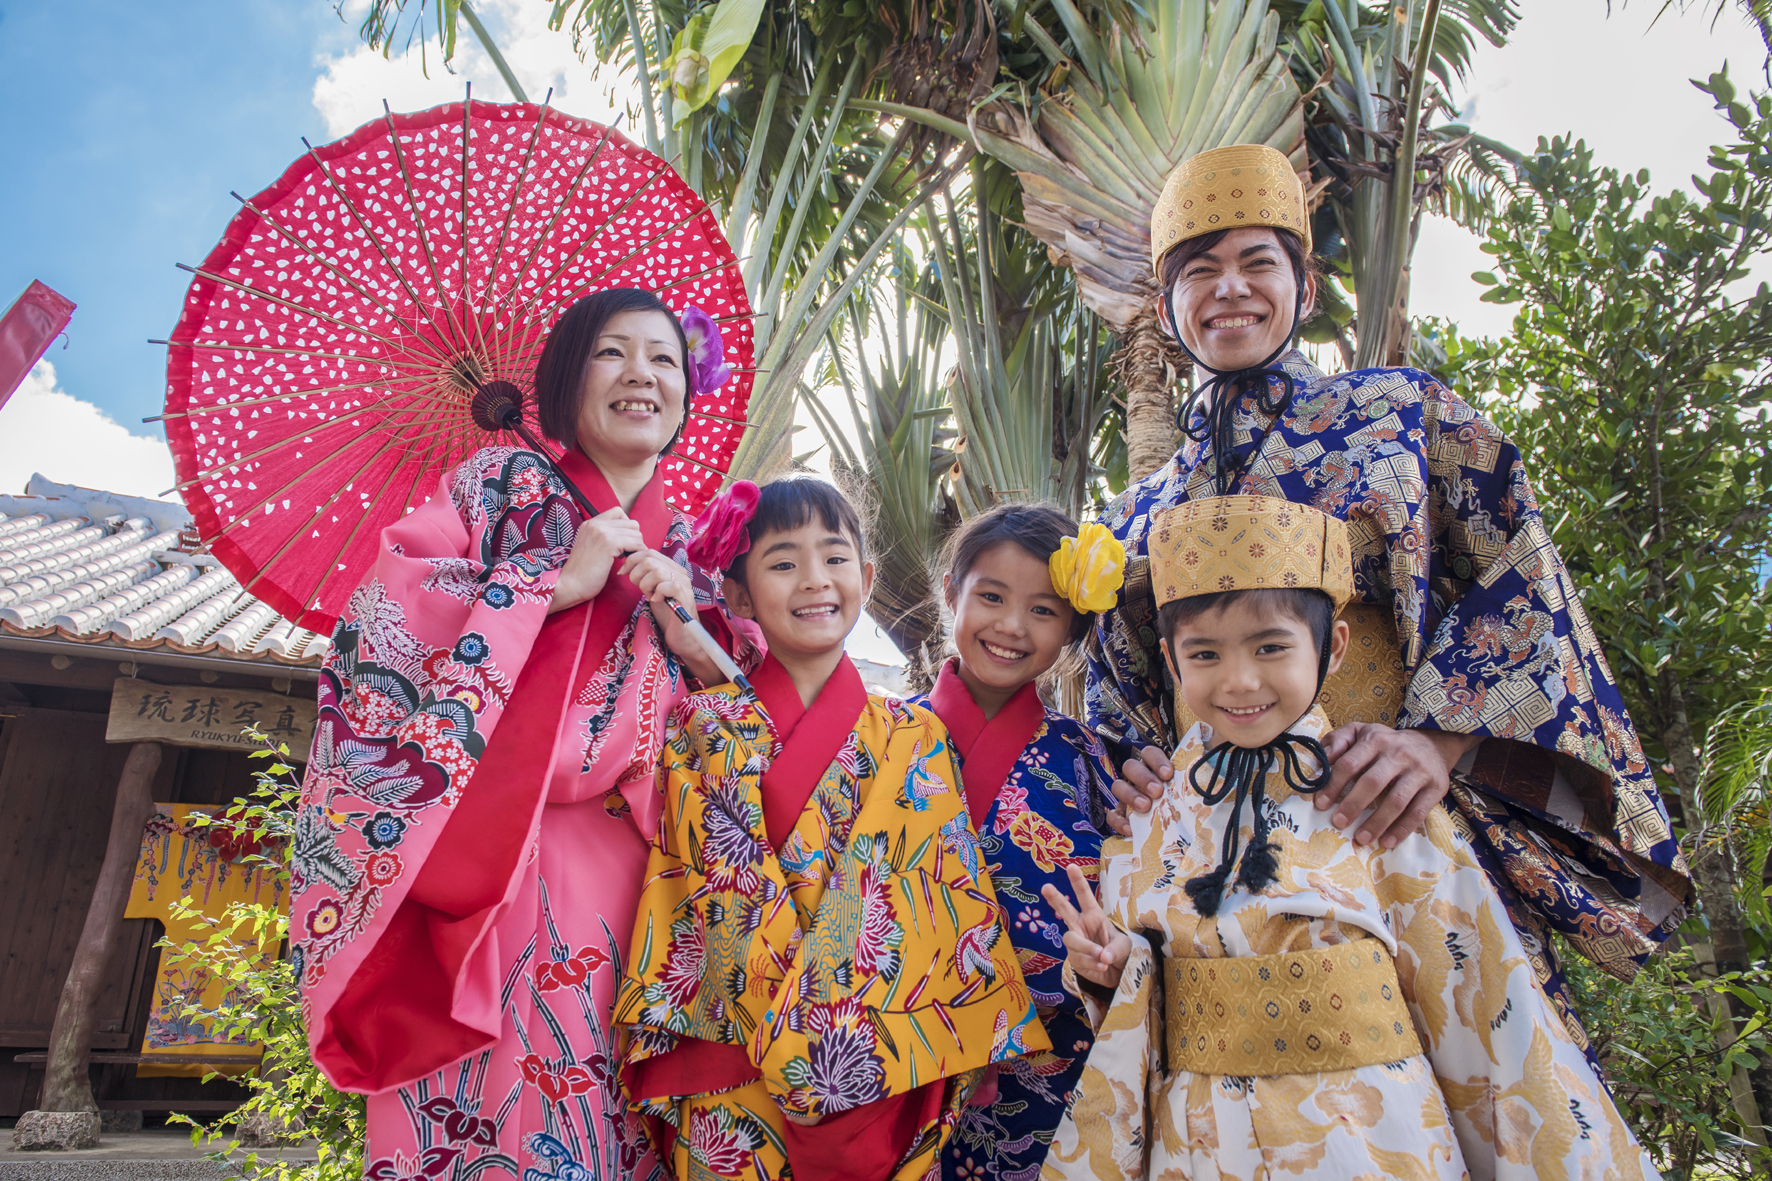 沖繩世界門票 & 南城文化工作坊體驗